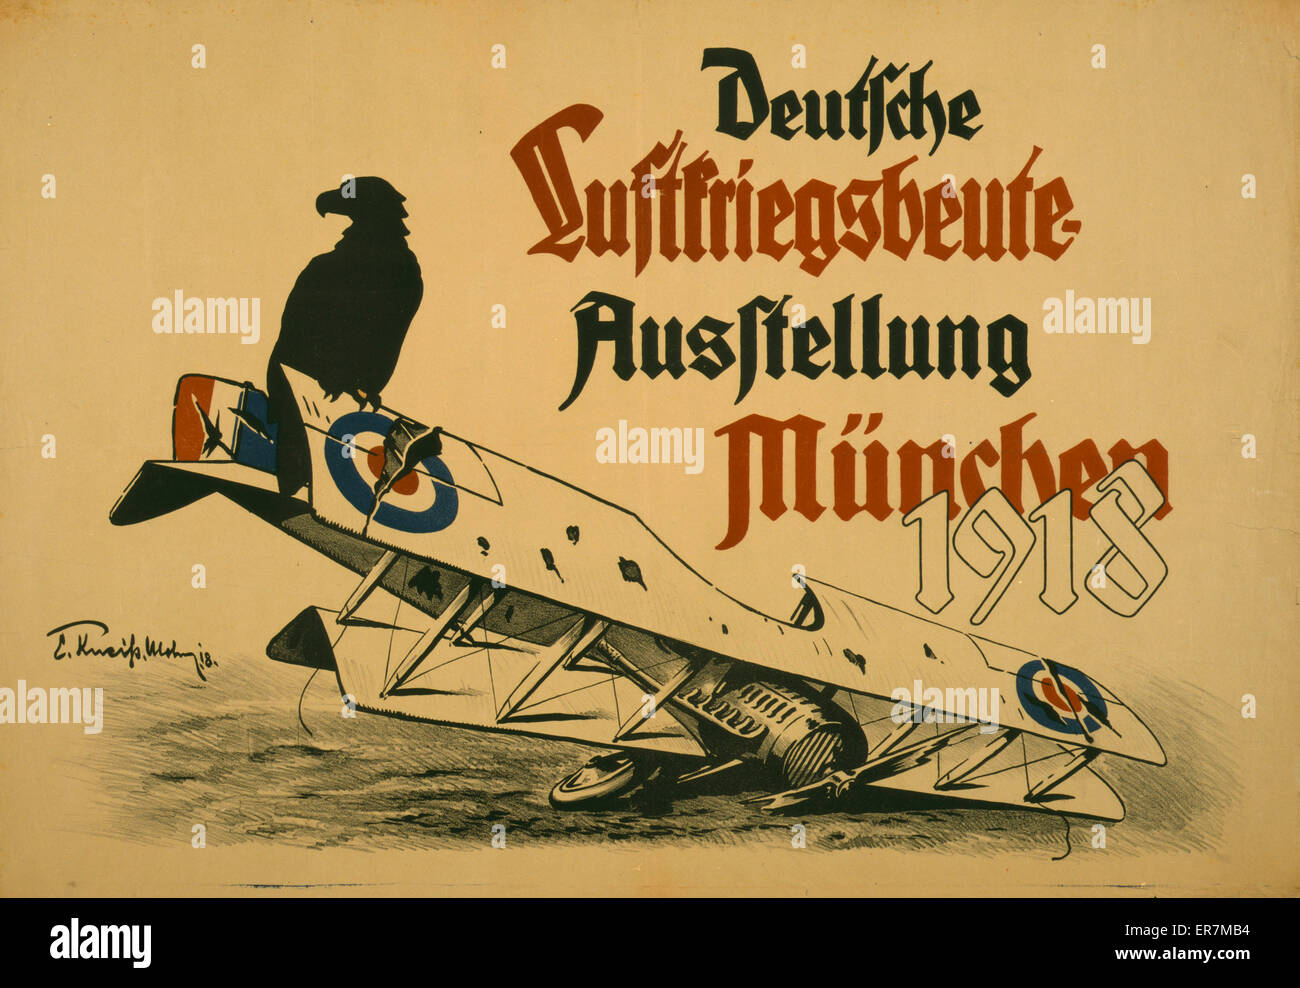 Deutsche Luftskriegsbeute Ausstellung Munchen 1918 Stock Photo